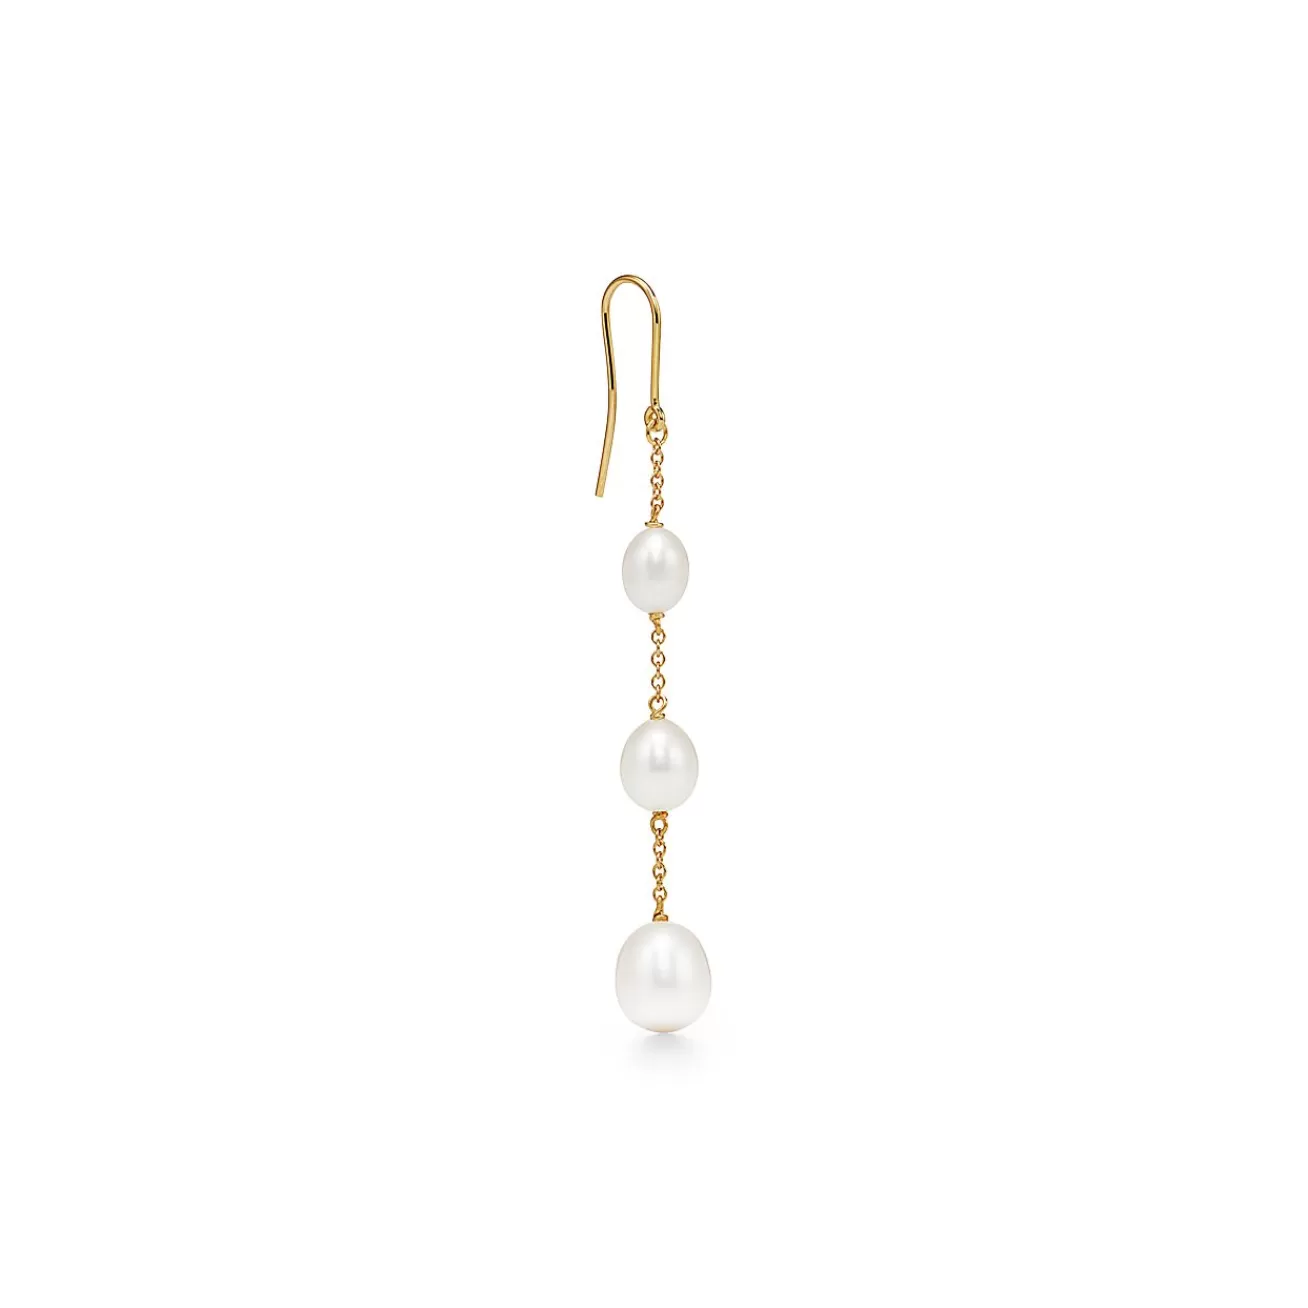 Tiffany & Co. Elsa Peretti® Pearls by the Yard™ chain earrings in 18k gold. | ^ Earrings | Gold Jewelry